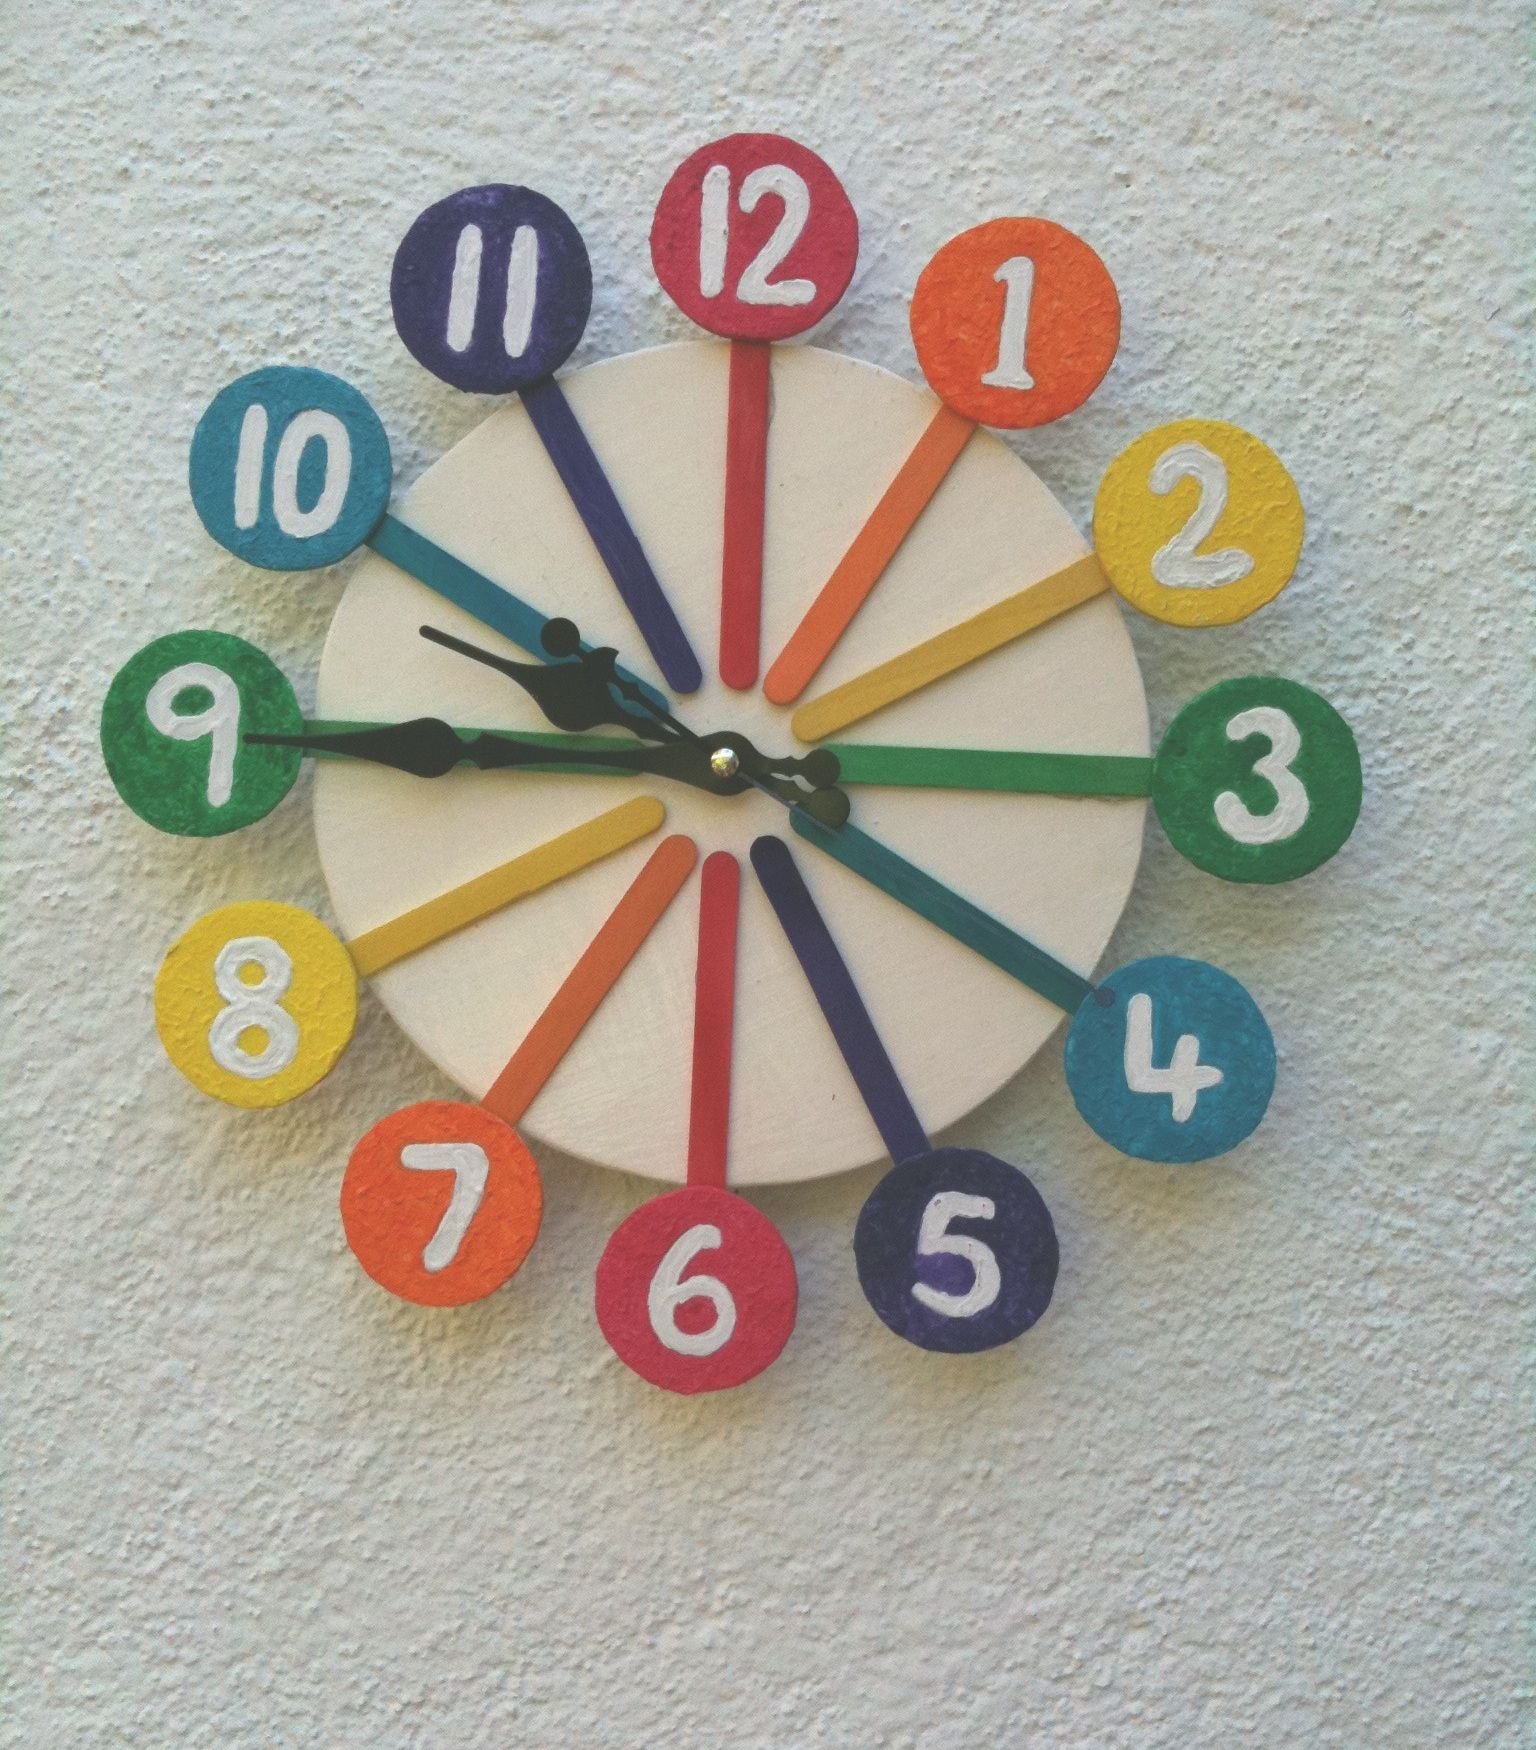 Игры делаем часы. Часы из картона. Часы из картона для детей. Часы из картона в школу. Часы из картона в садик.